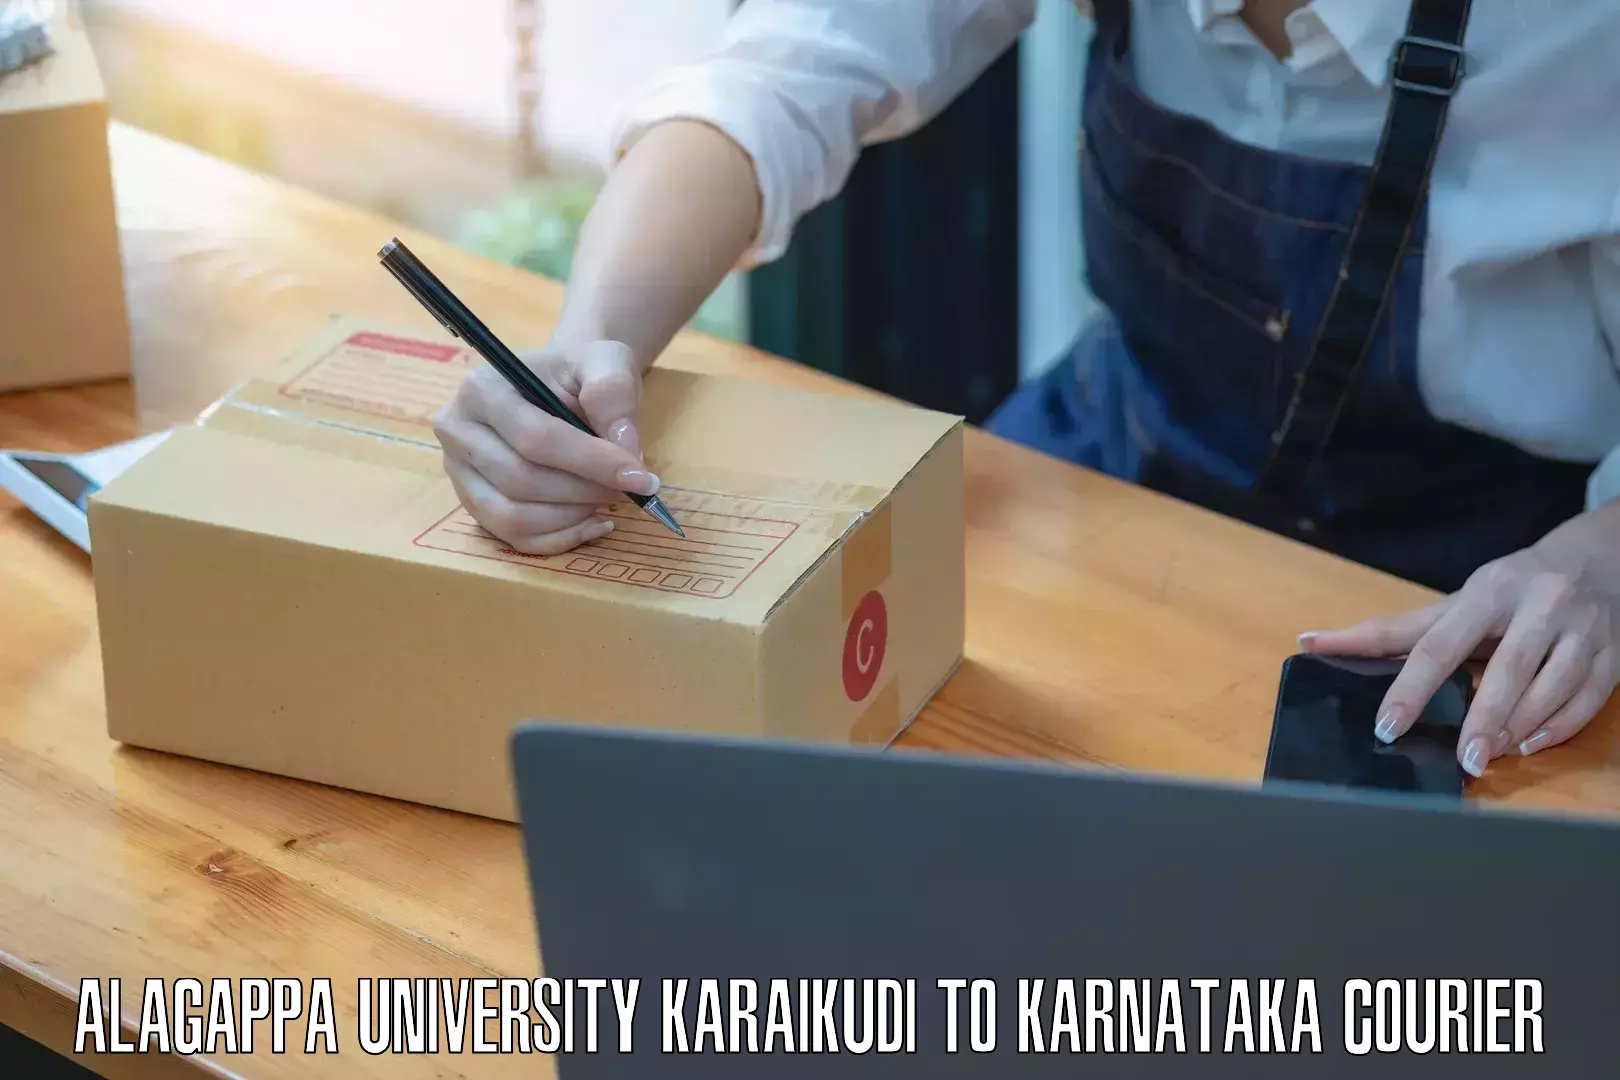 Fragile item shipping Alagappa University Karaikudi to Karnataka